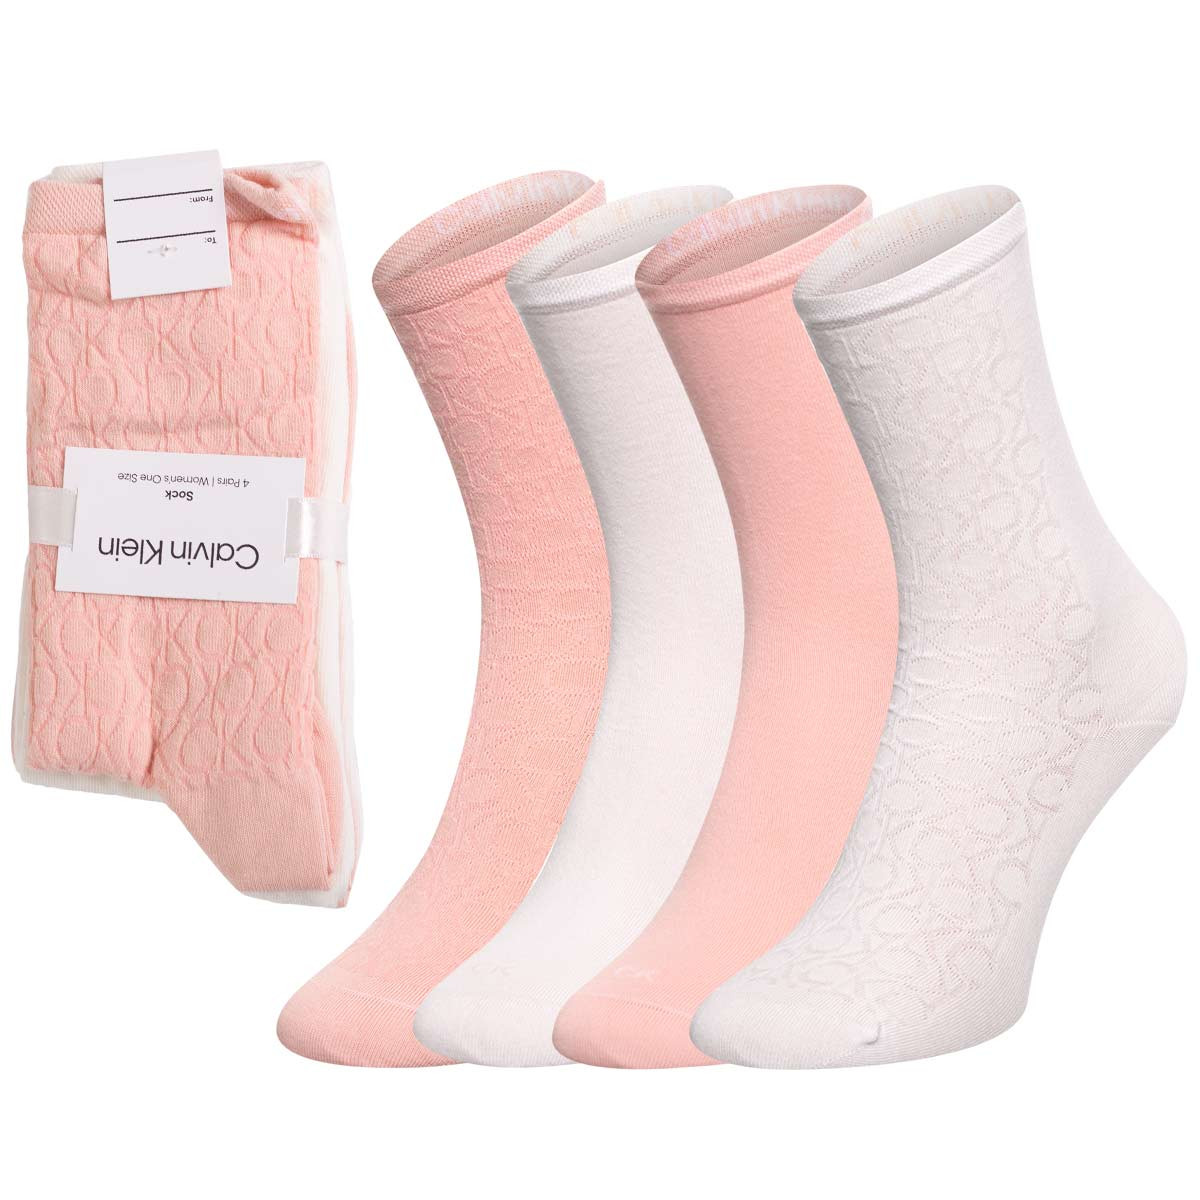 Ponožky Calvin Klein 701219852003 Pink/Ecru 37-41